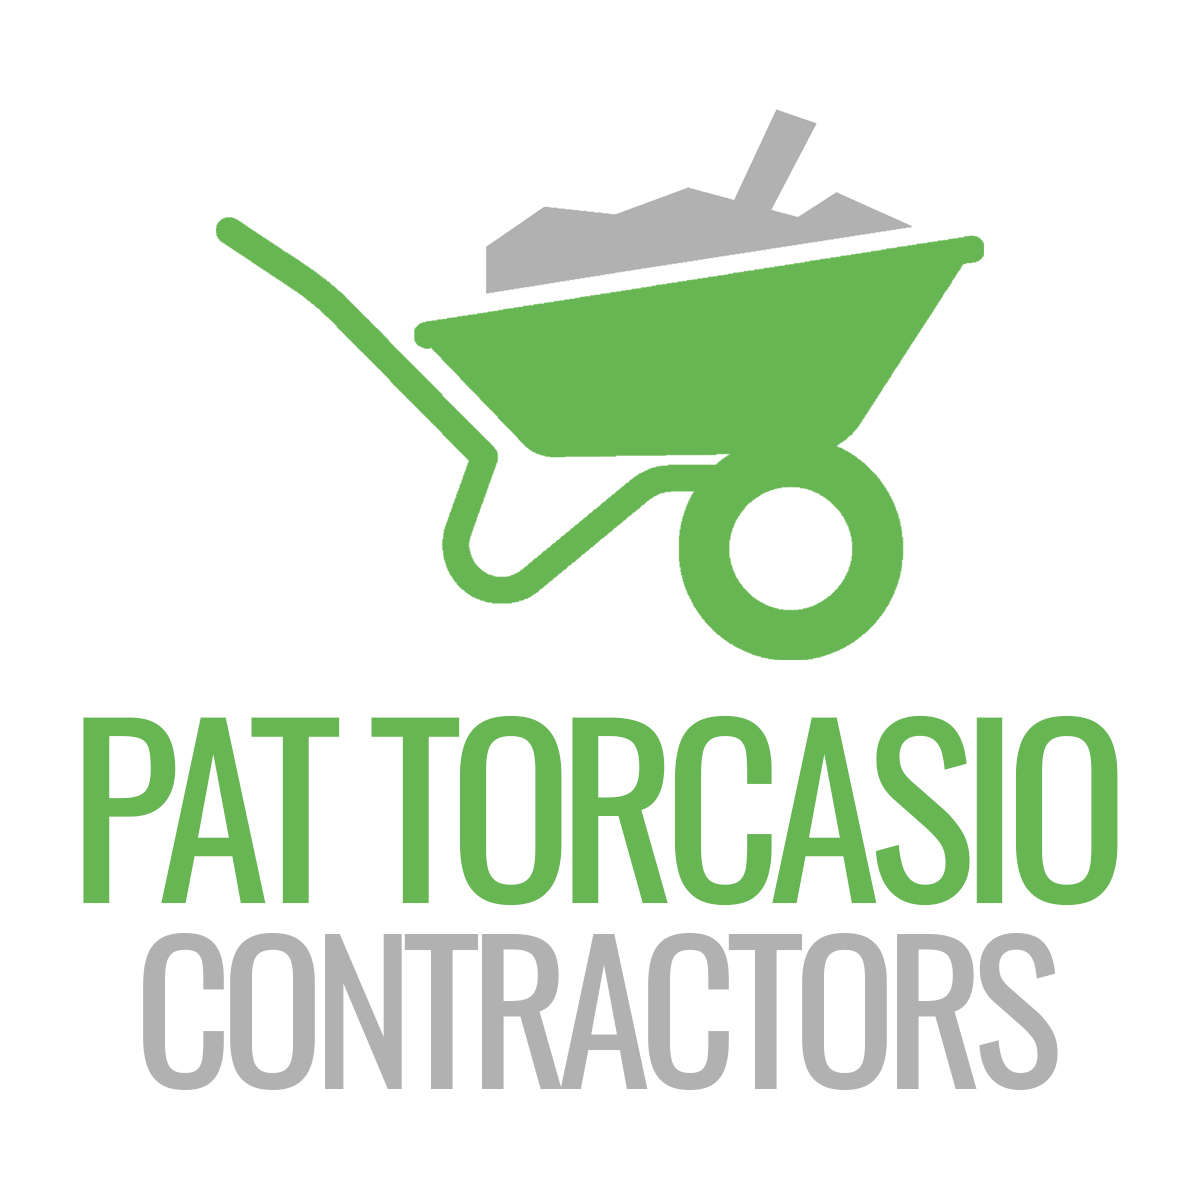 Pat Torcasio Contractors, LLC Logo